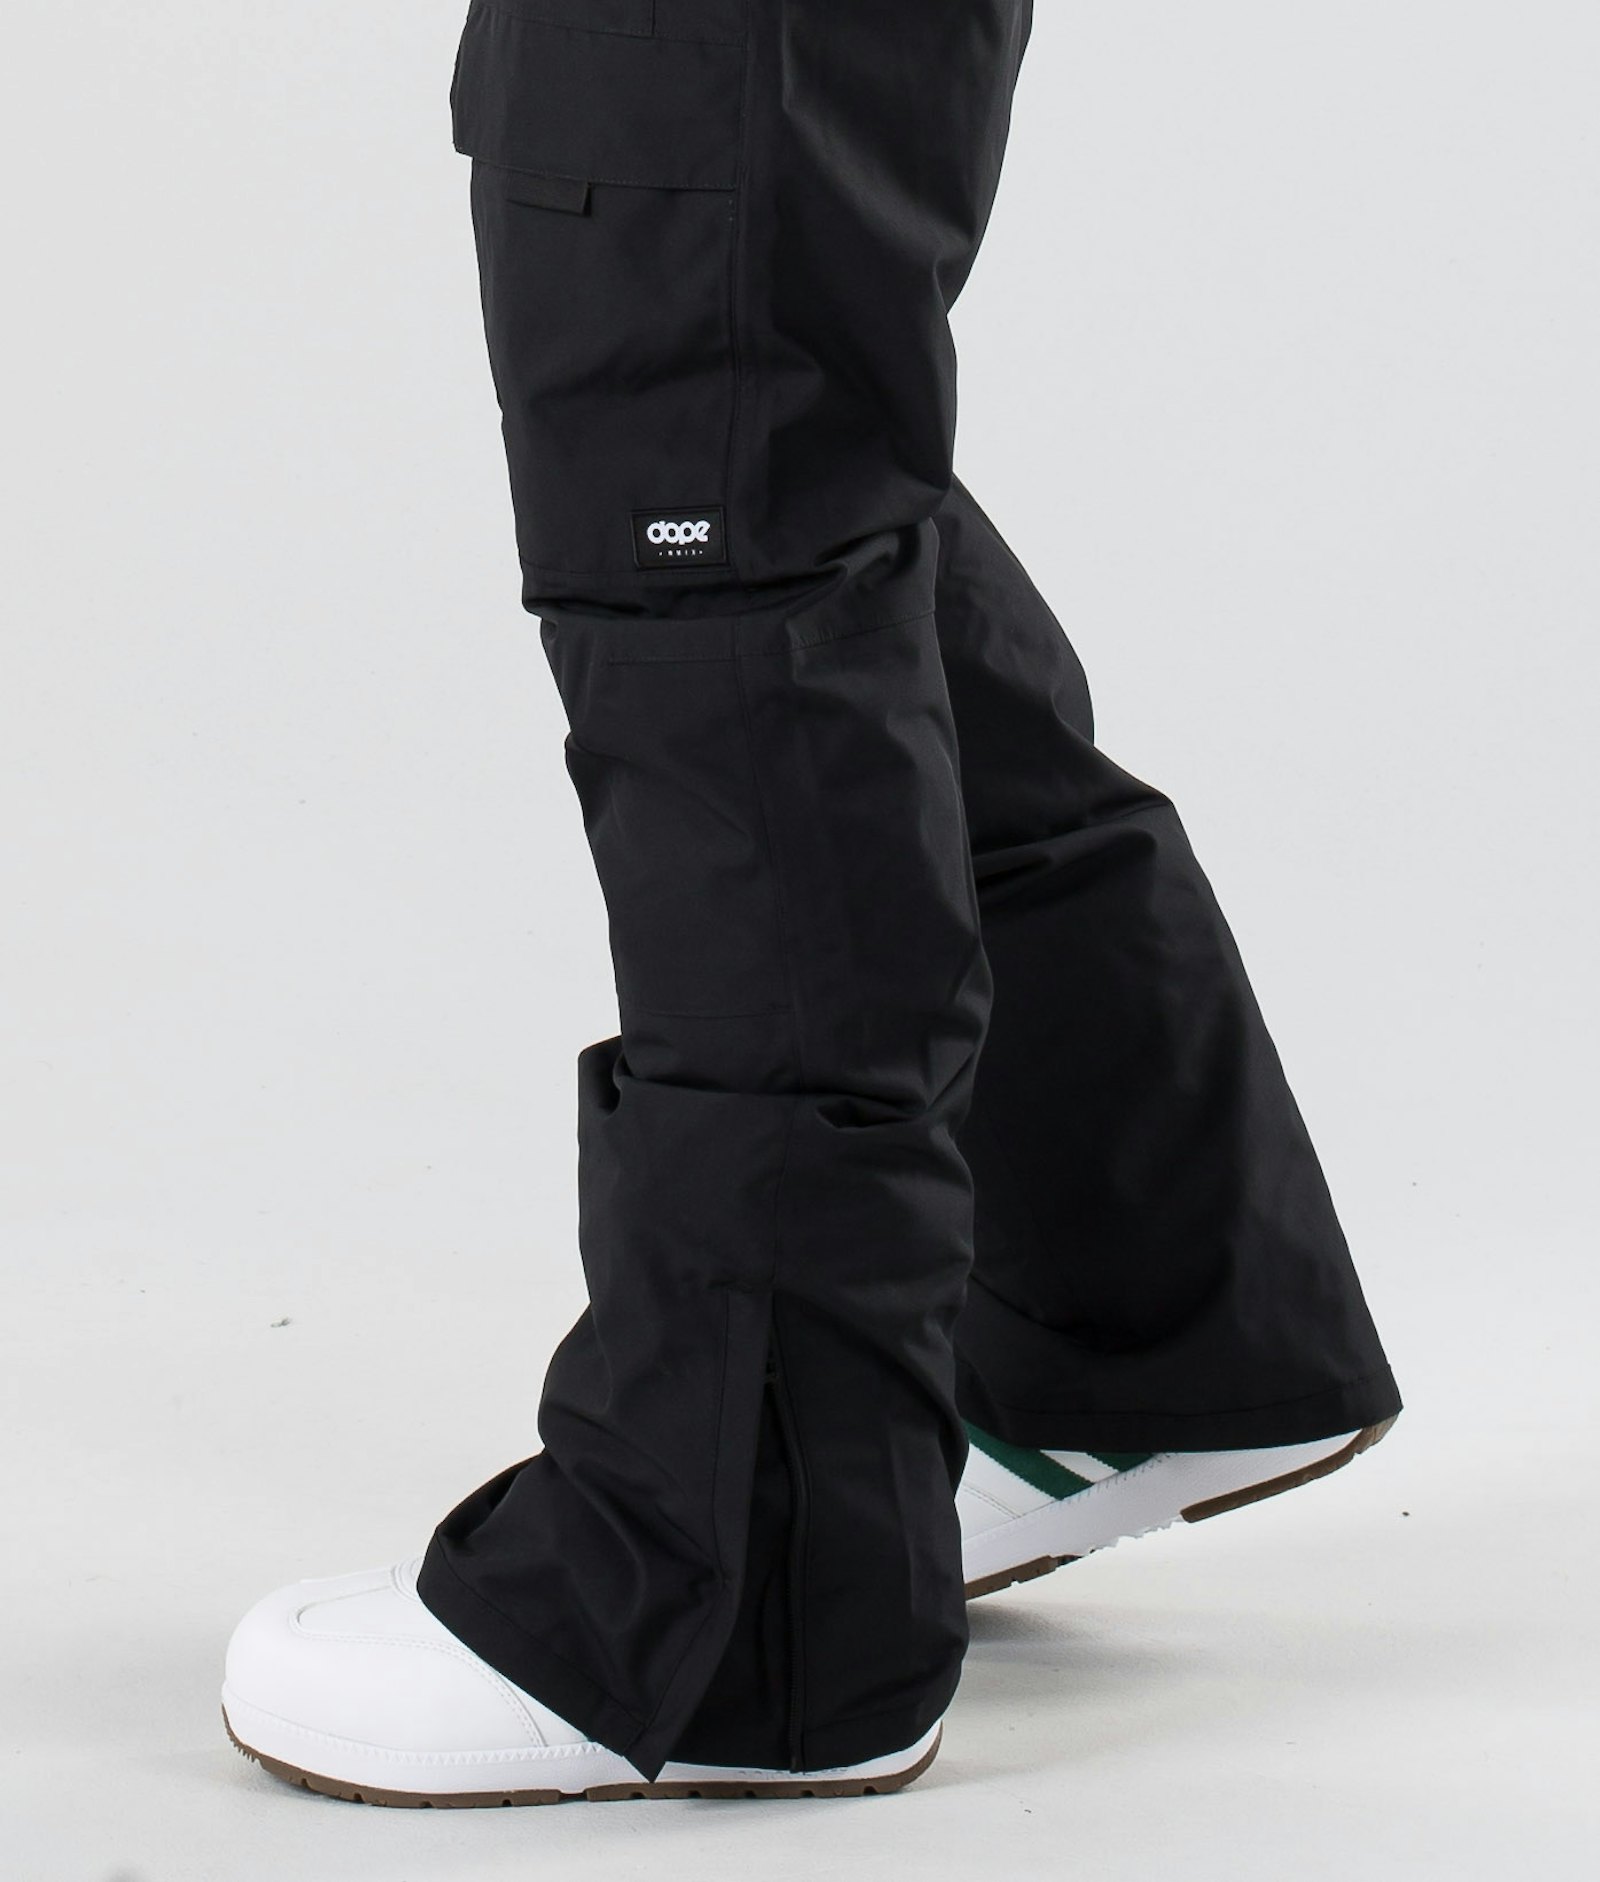 Dope Poise 2019 Spodnie Snowboardowe Mężczyźni Black